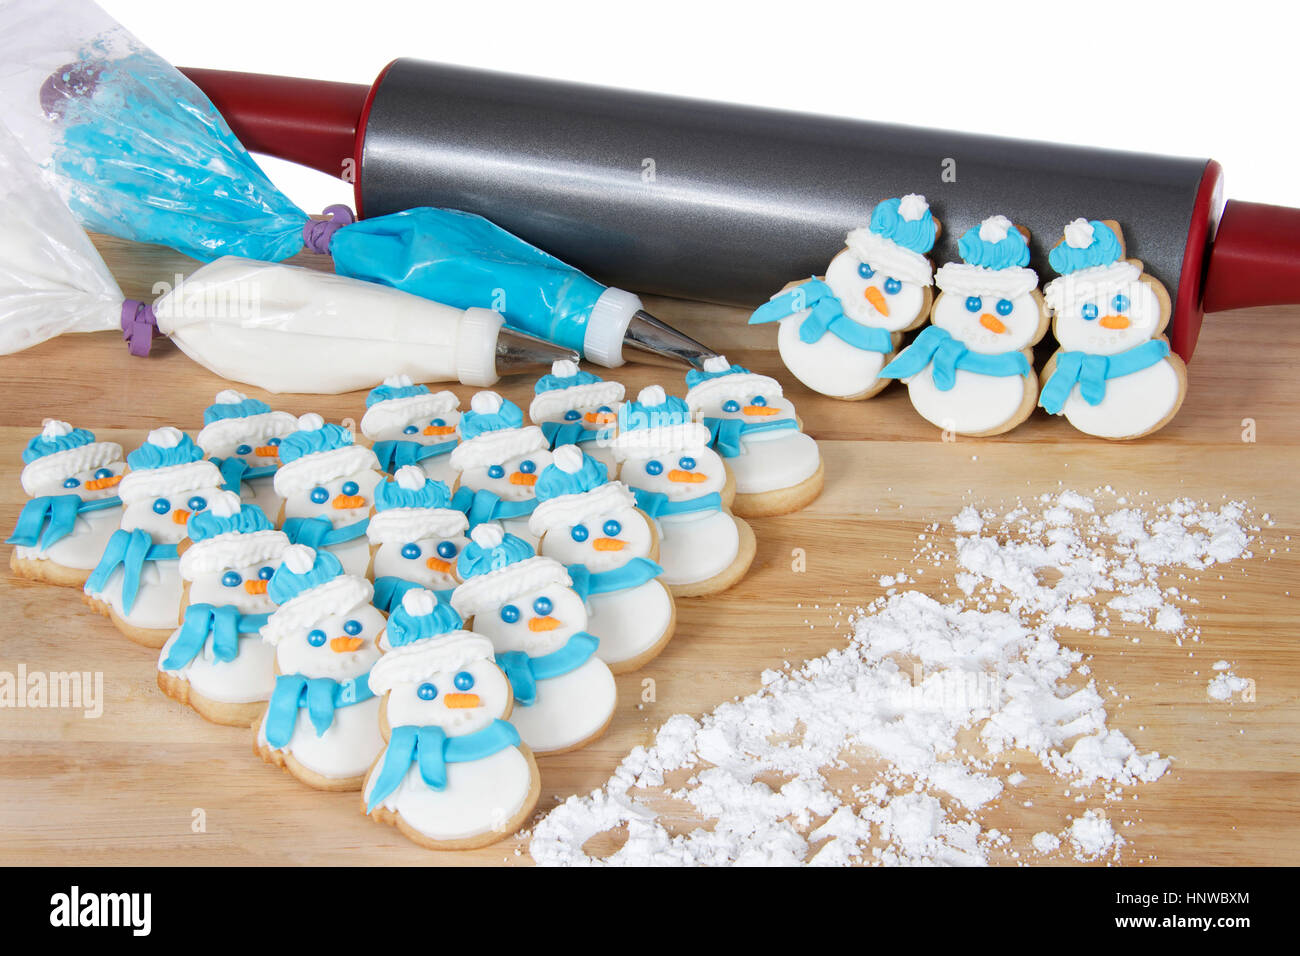 Pupazzi di neve lo zucchero i cookie su una tavola di legno con blu e bianco glassa reale nella decorazione di sacchi con il matterello in background Foto Stock